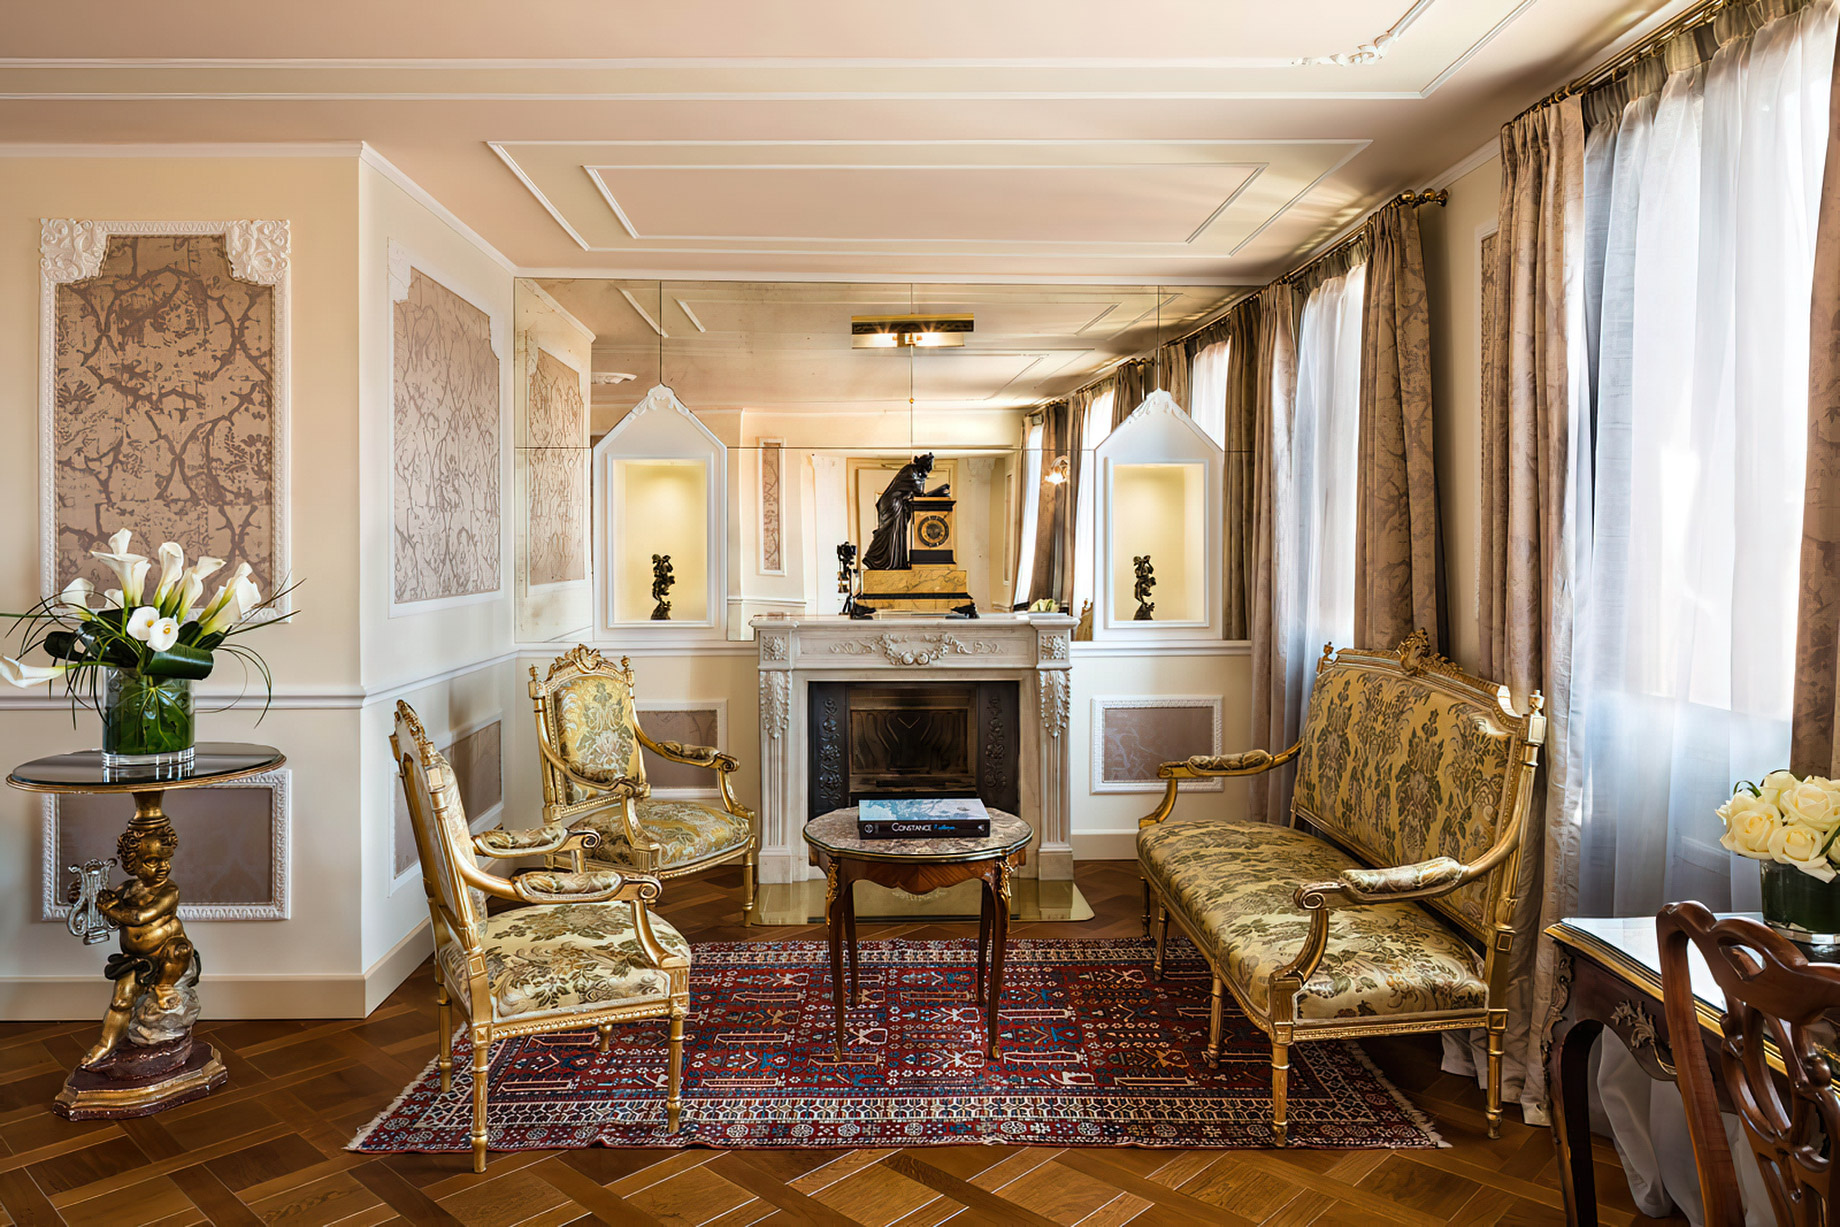 Baglioni Hotel Luna, Venezia – Venice, Italy – Giorgione Terrace Suite